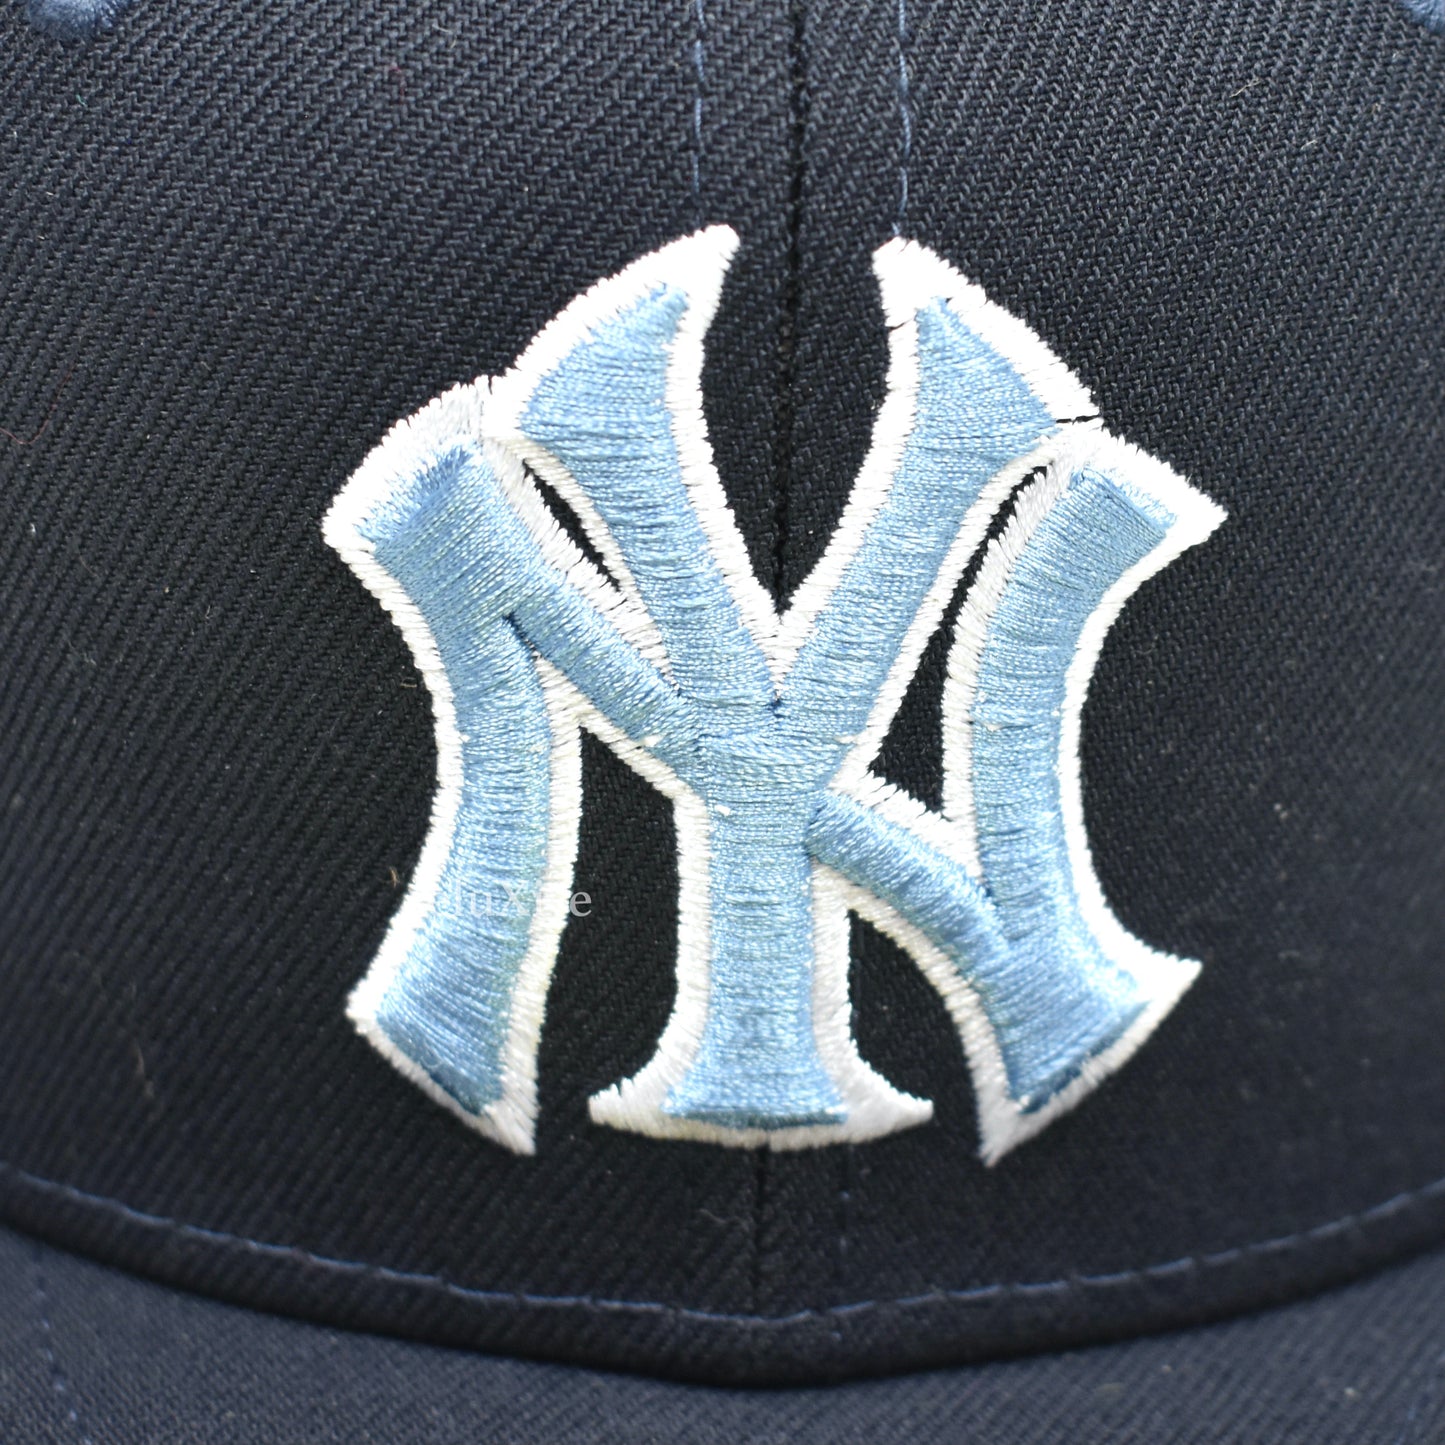 Supreme x New Era - Kanji New York Yankees Fitted Hat (Navy)